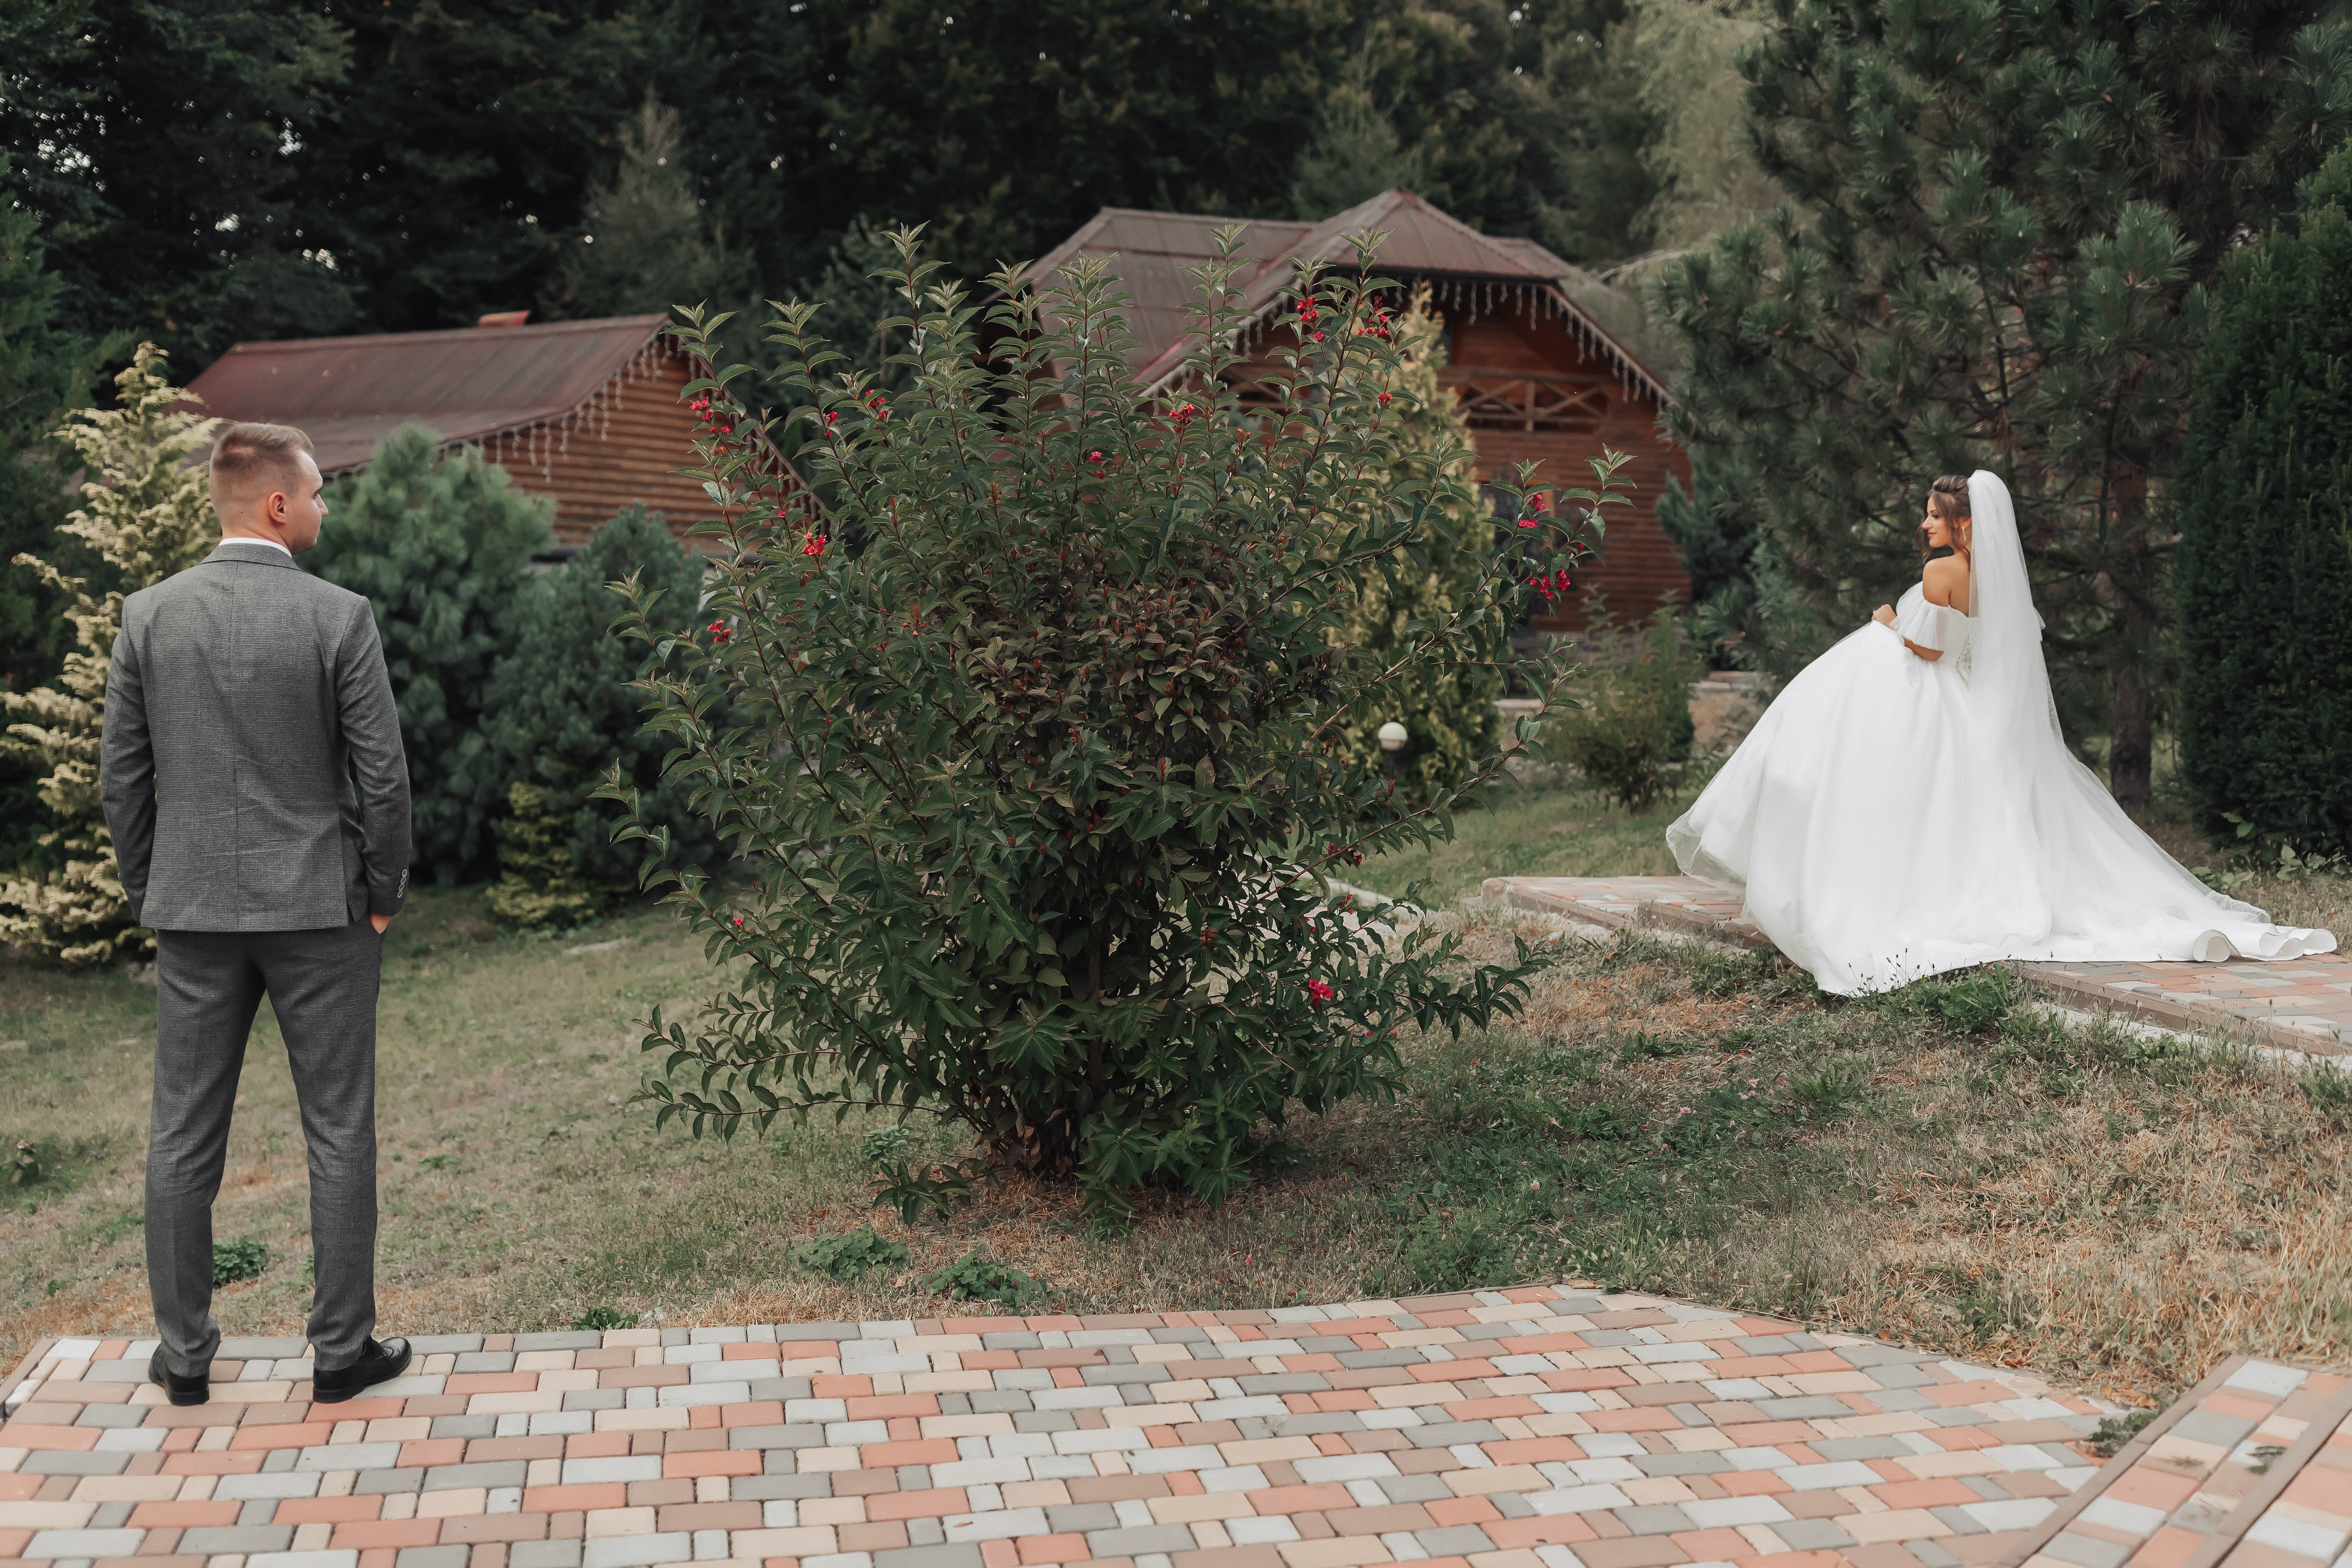 La mariée et le marié se tiennent loin l'un de l'autre | Source : Shutterstock